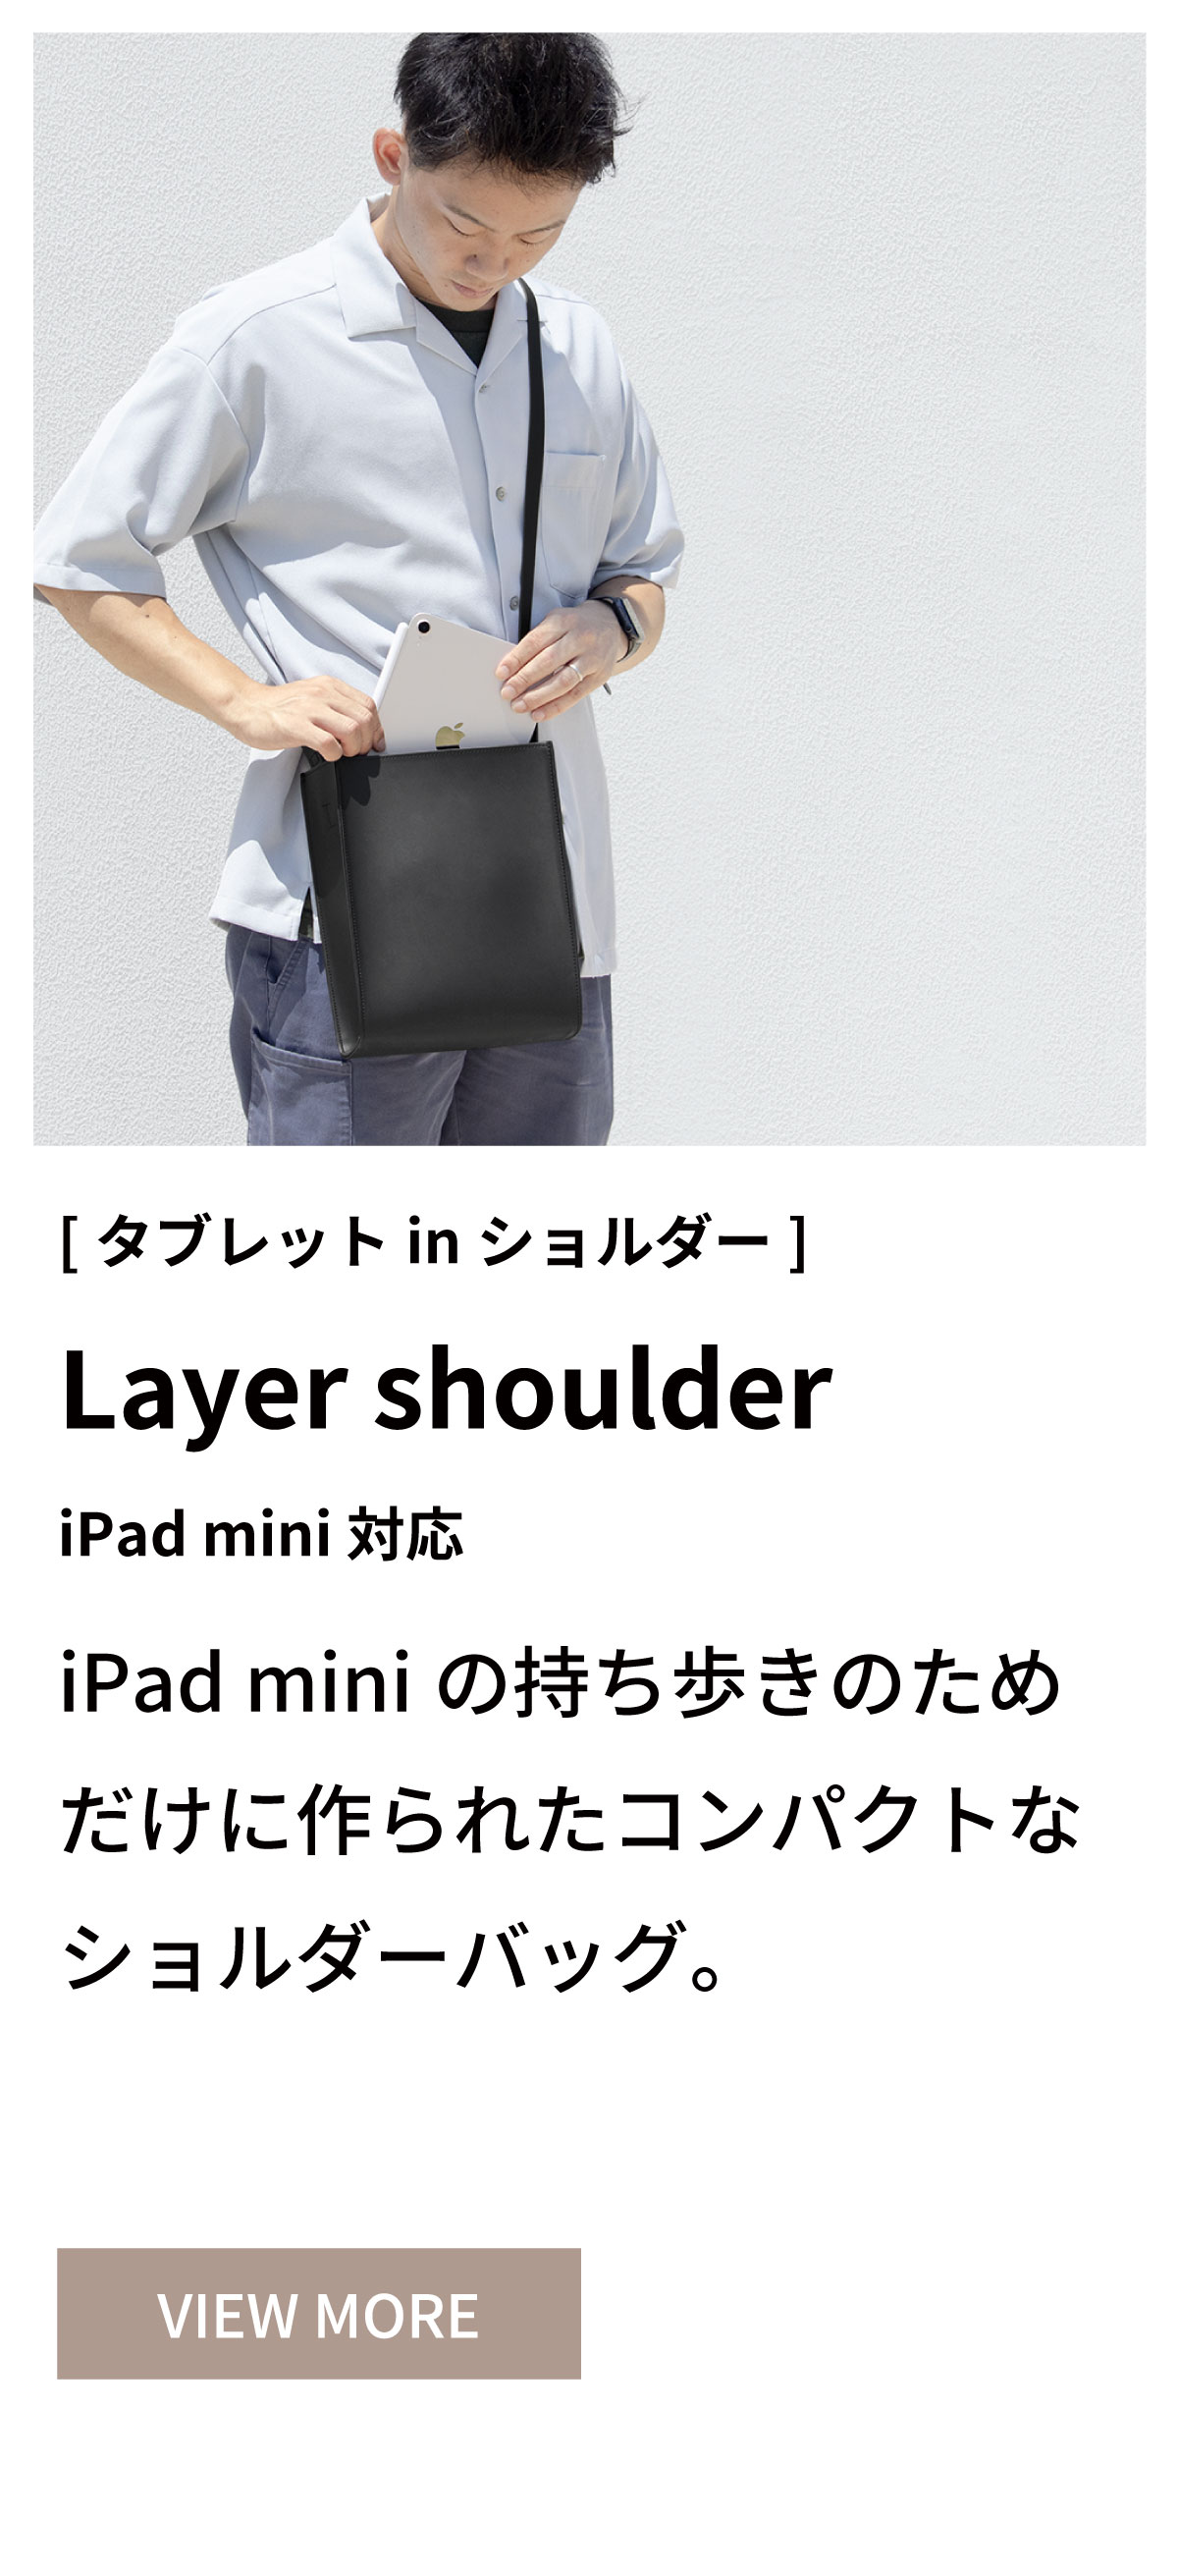 Layer shoulder